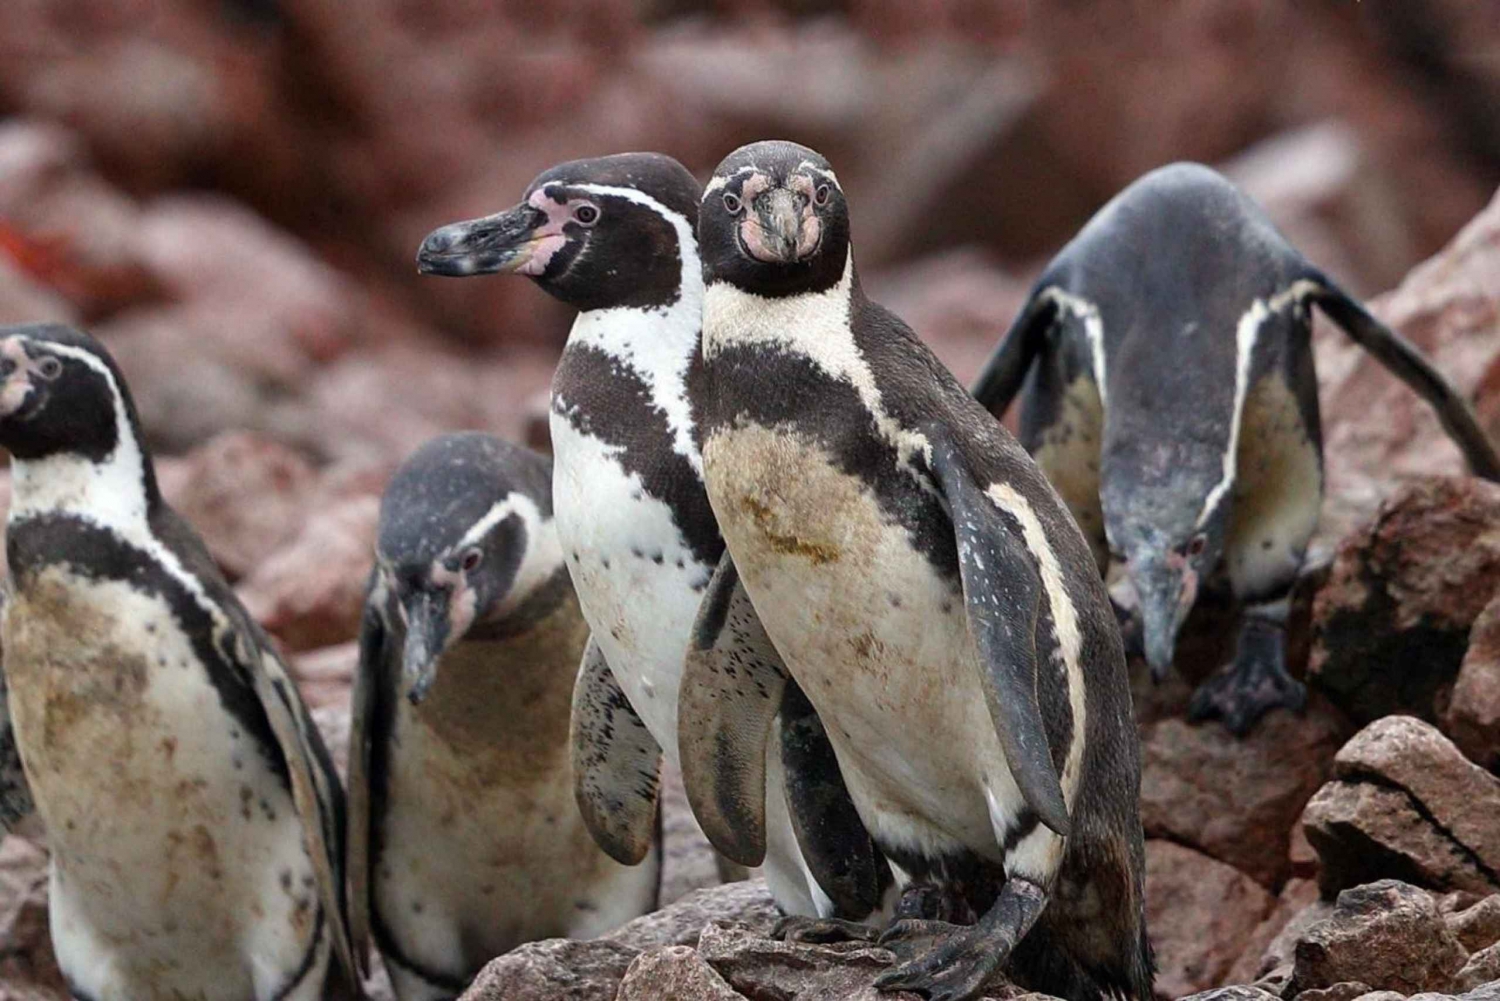 Paracas: Osservazione della fauna marina nelle isole Ballestas